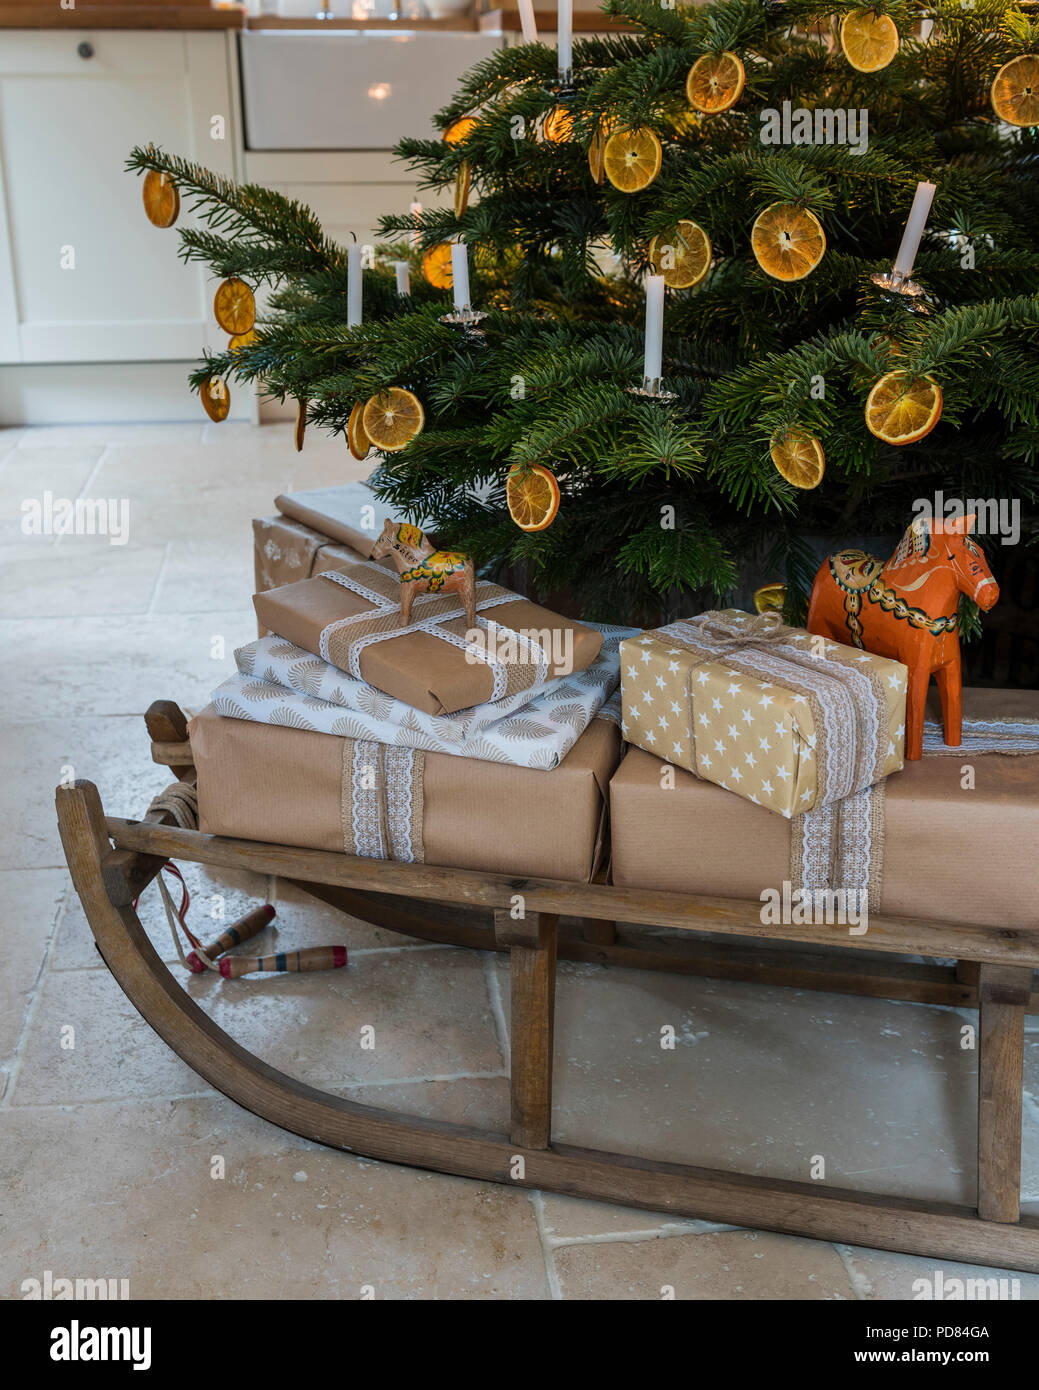 Eingepackten Geschenke auf einem hölzernen Schlitten unter Kerzenlicht beleuchteten Weihnachtsbaum Stockfoto